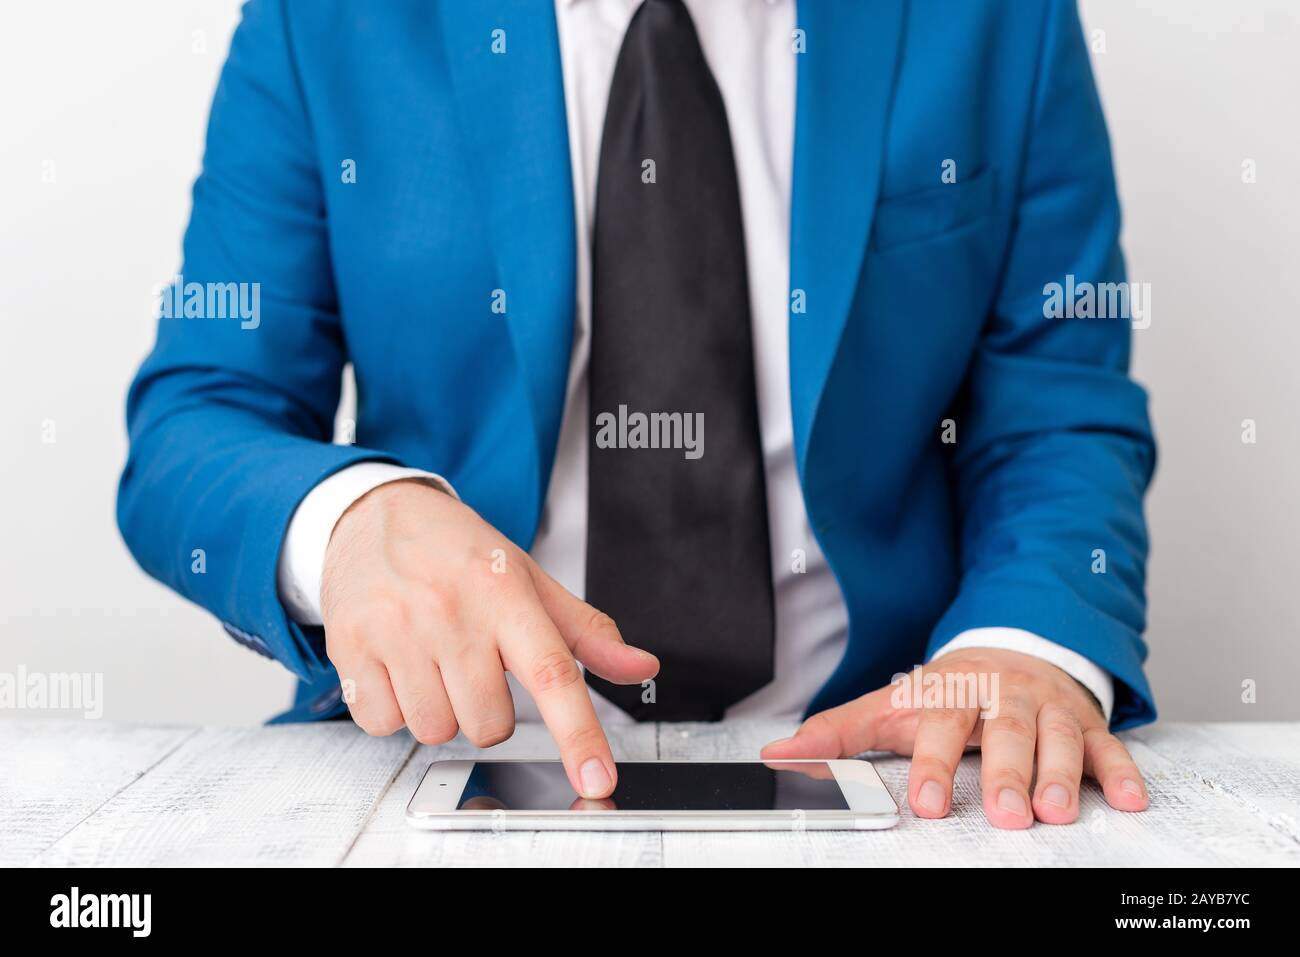 Uomo d'affari in suite blu con cravatta tiene il lap top in mano. Concetto di business con l'uomo in una suite e un lap top. Foto Stock